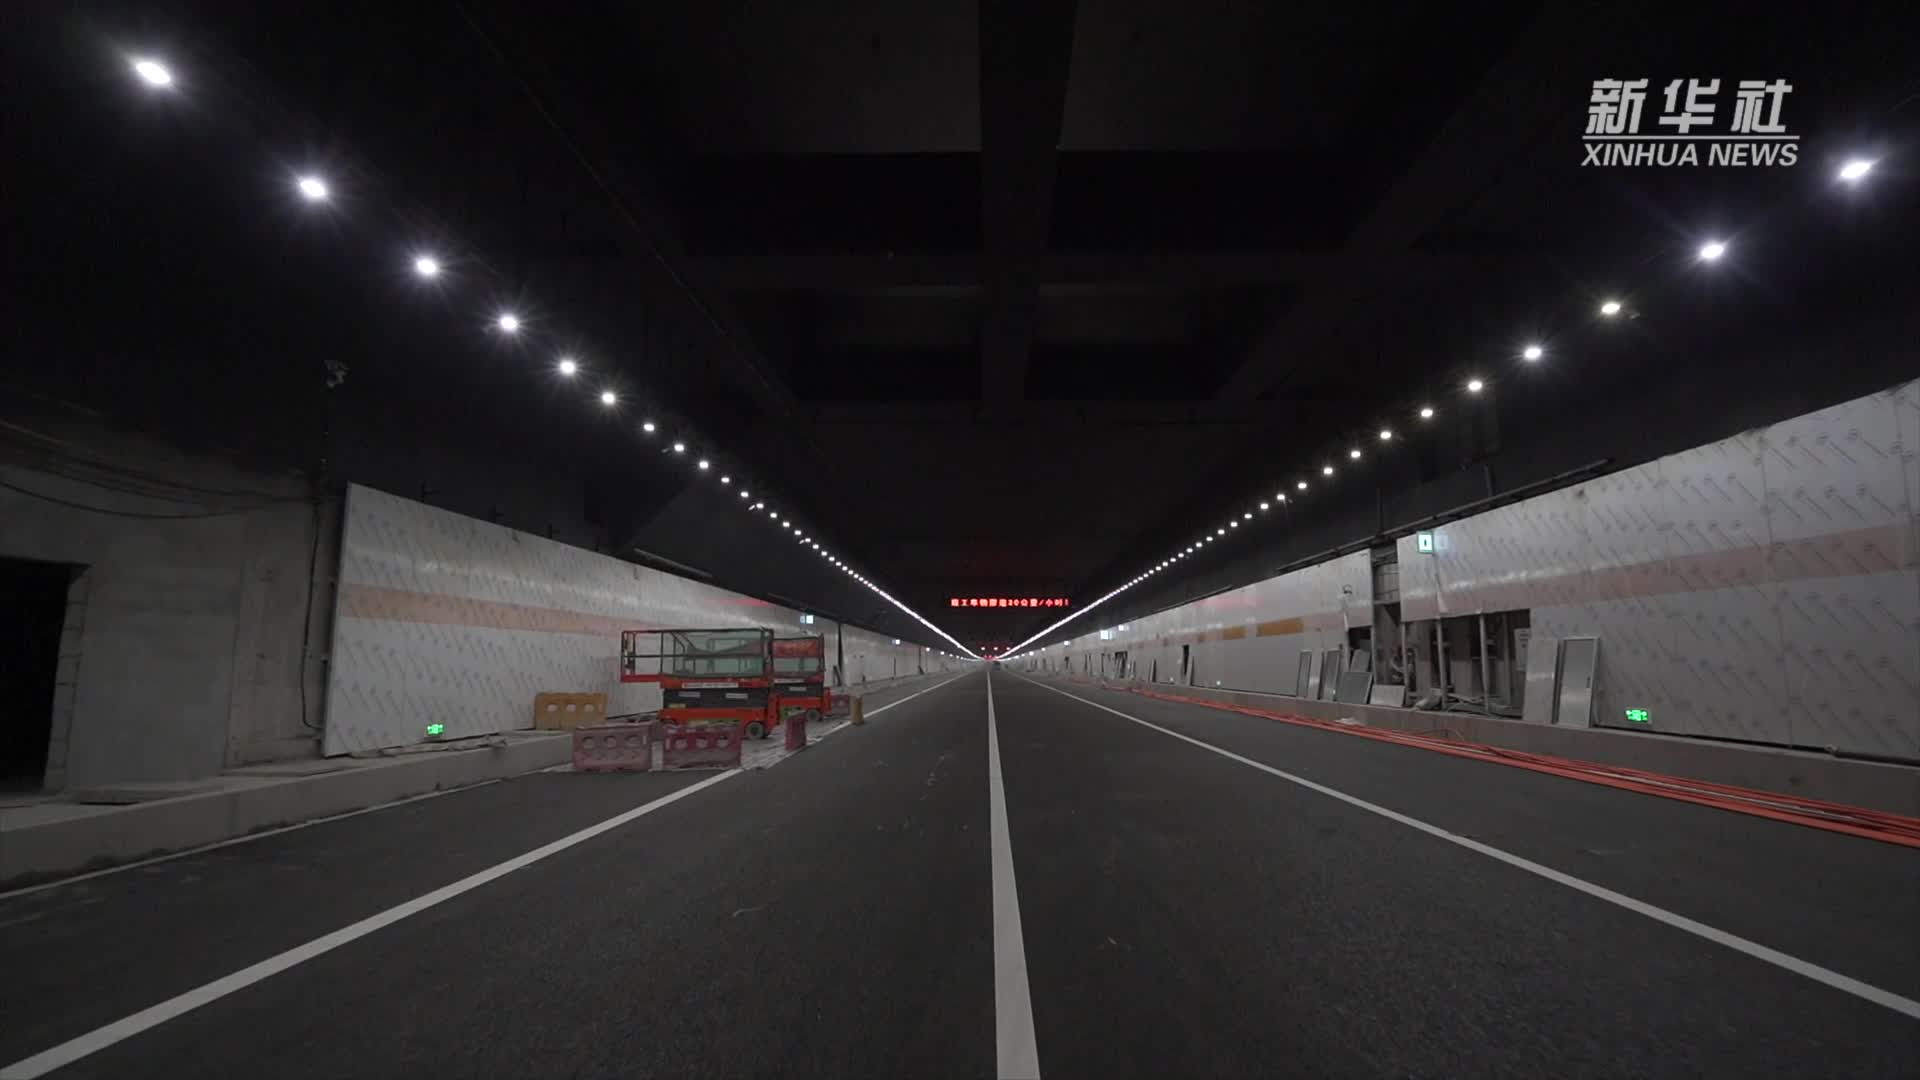 江苏无锡国内在建最长湖底隧道电力心脏顺利投运